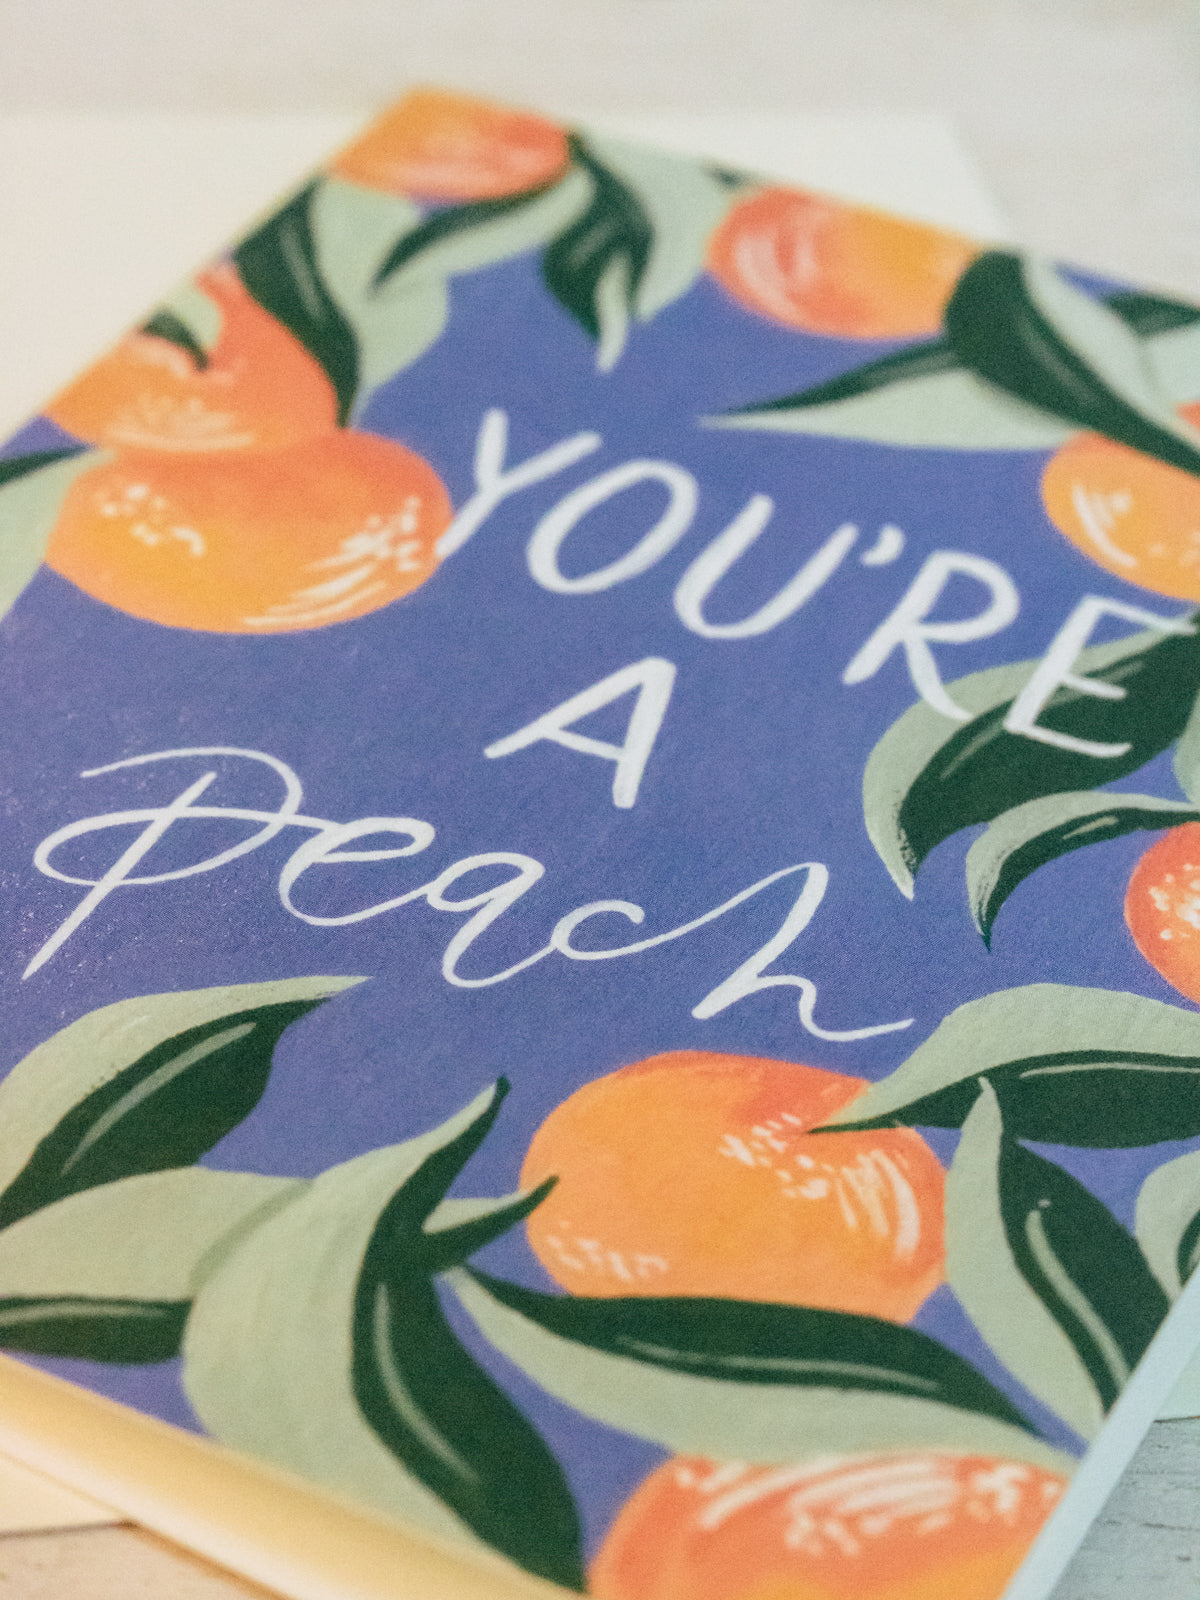 You're A Peach Card